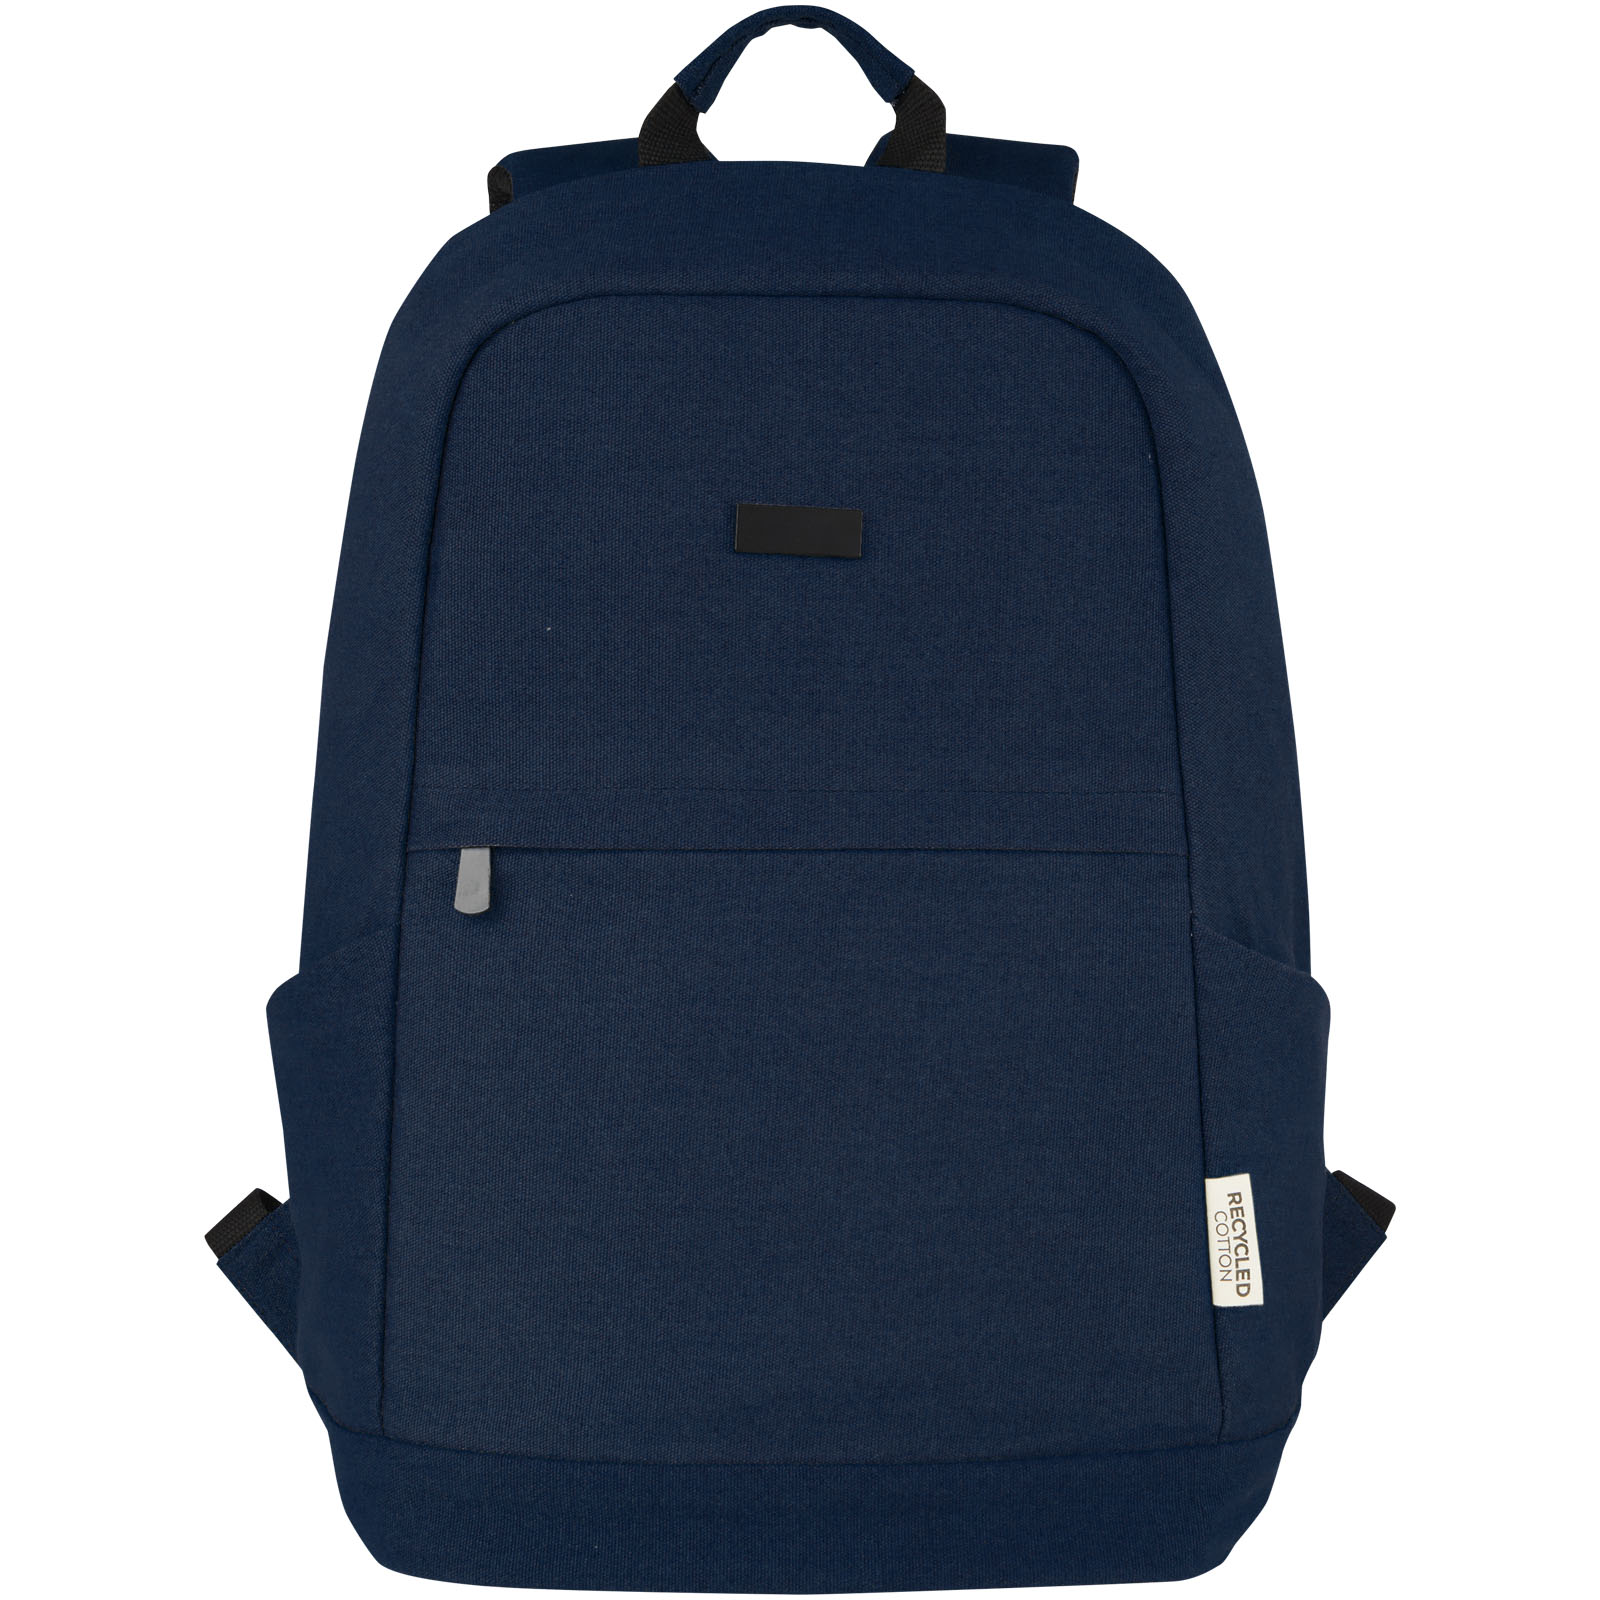 Advertising Laptop Backpacks - Joey 15.6